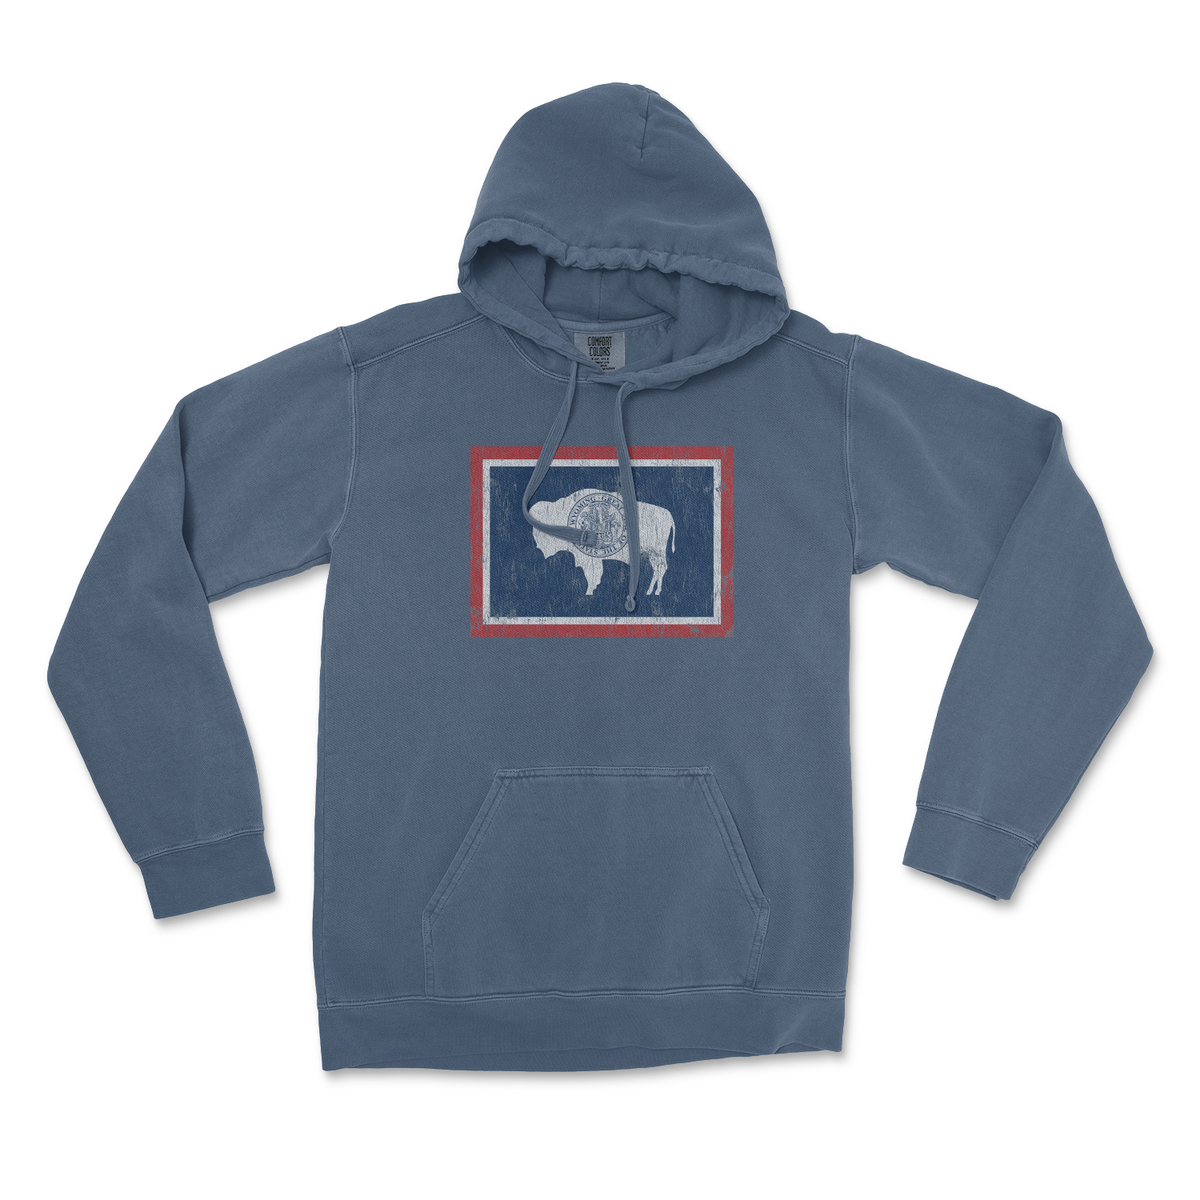 Wyoming Bison Fleece Zip Up Hoodie - Sarah Berry & Co